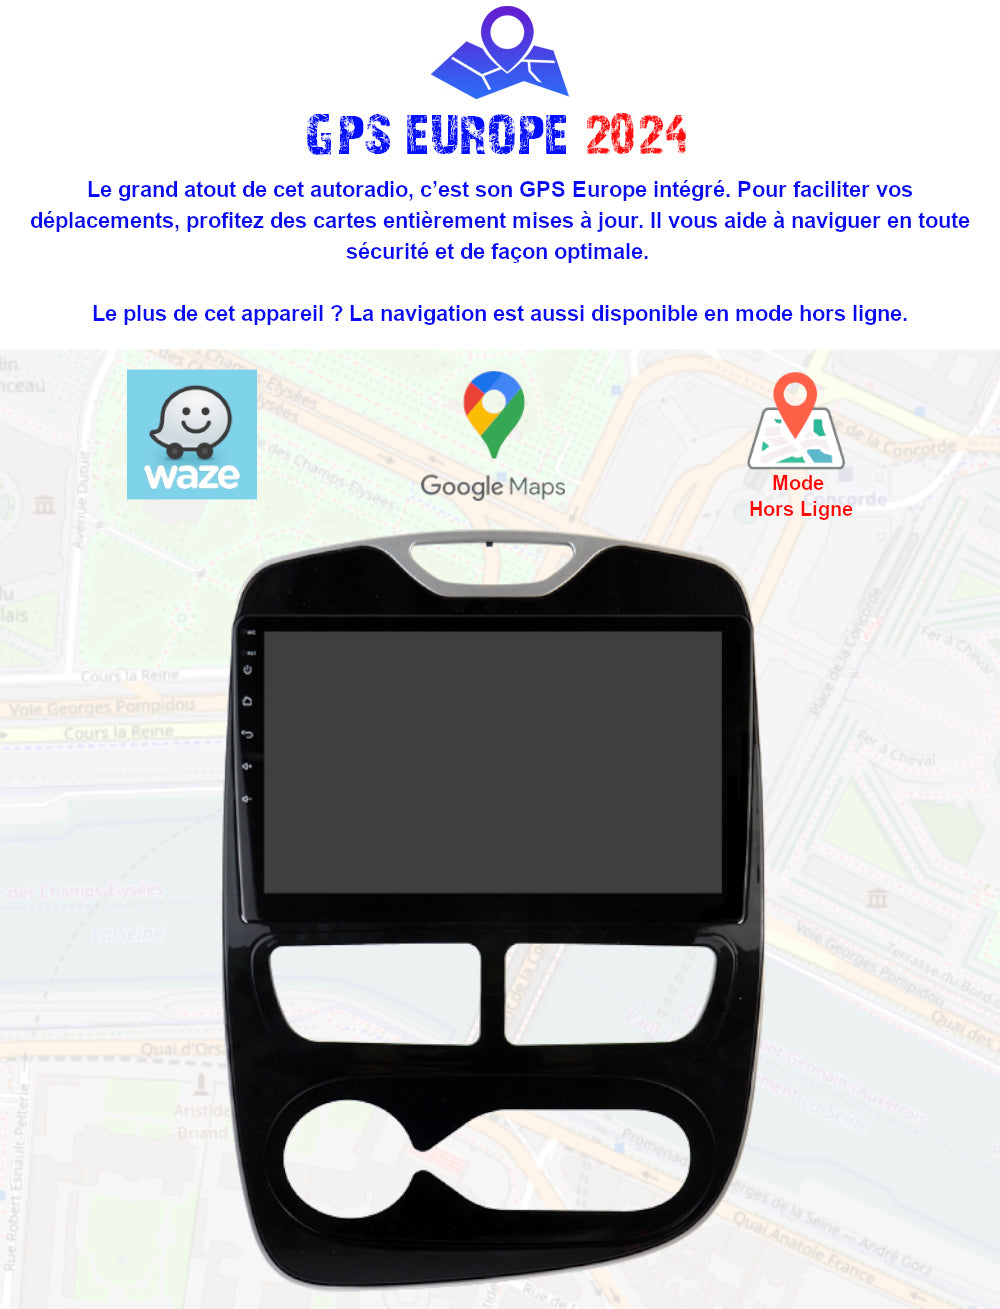 Autoradio écran Carplay Clio 4 (Carplay sans fil intégré) - Équipement auto